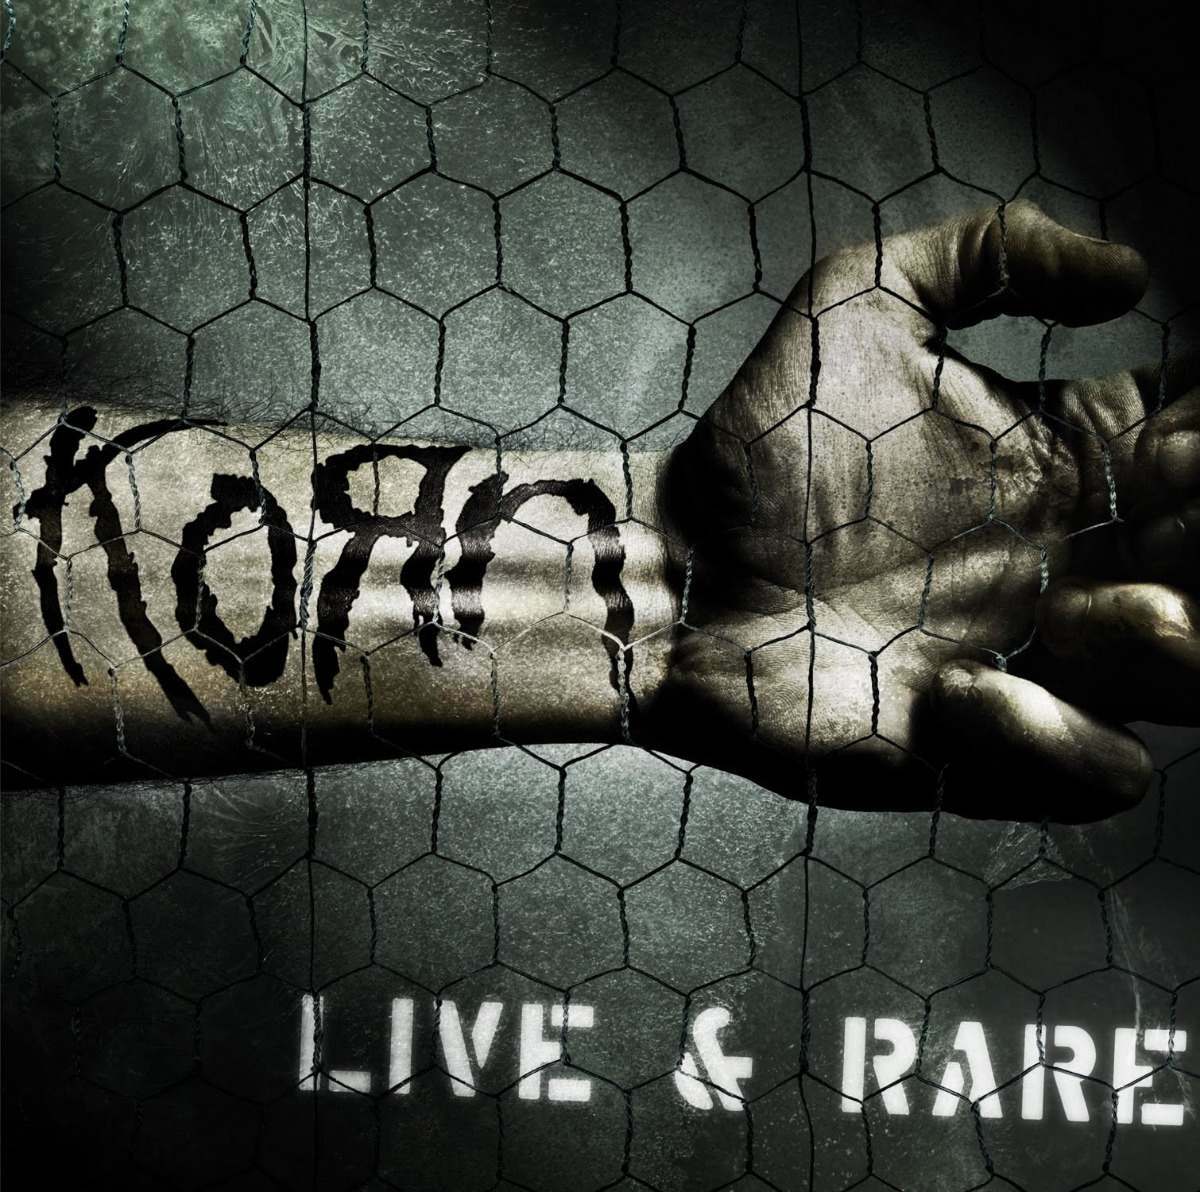 CD - Korn - Live and Rare